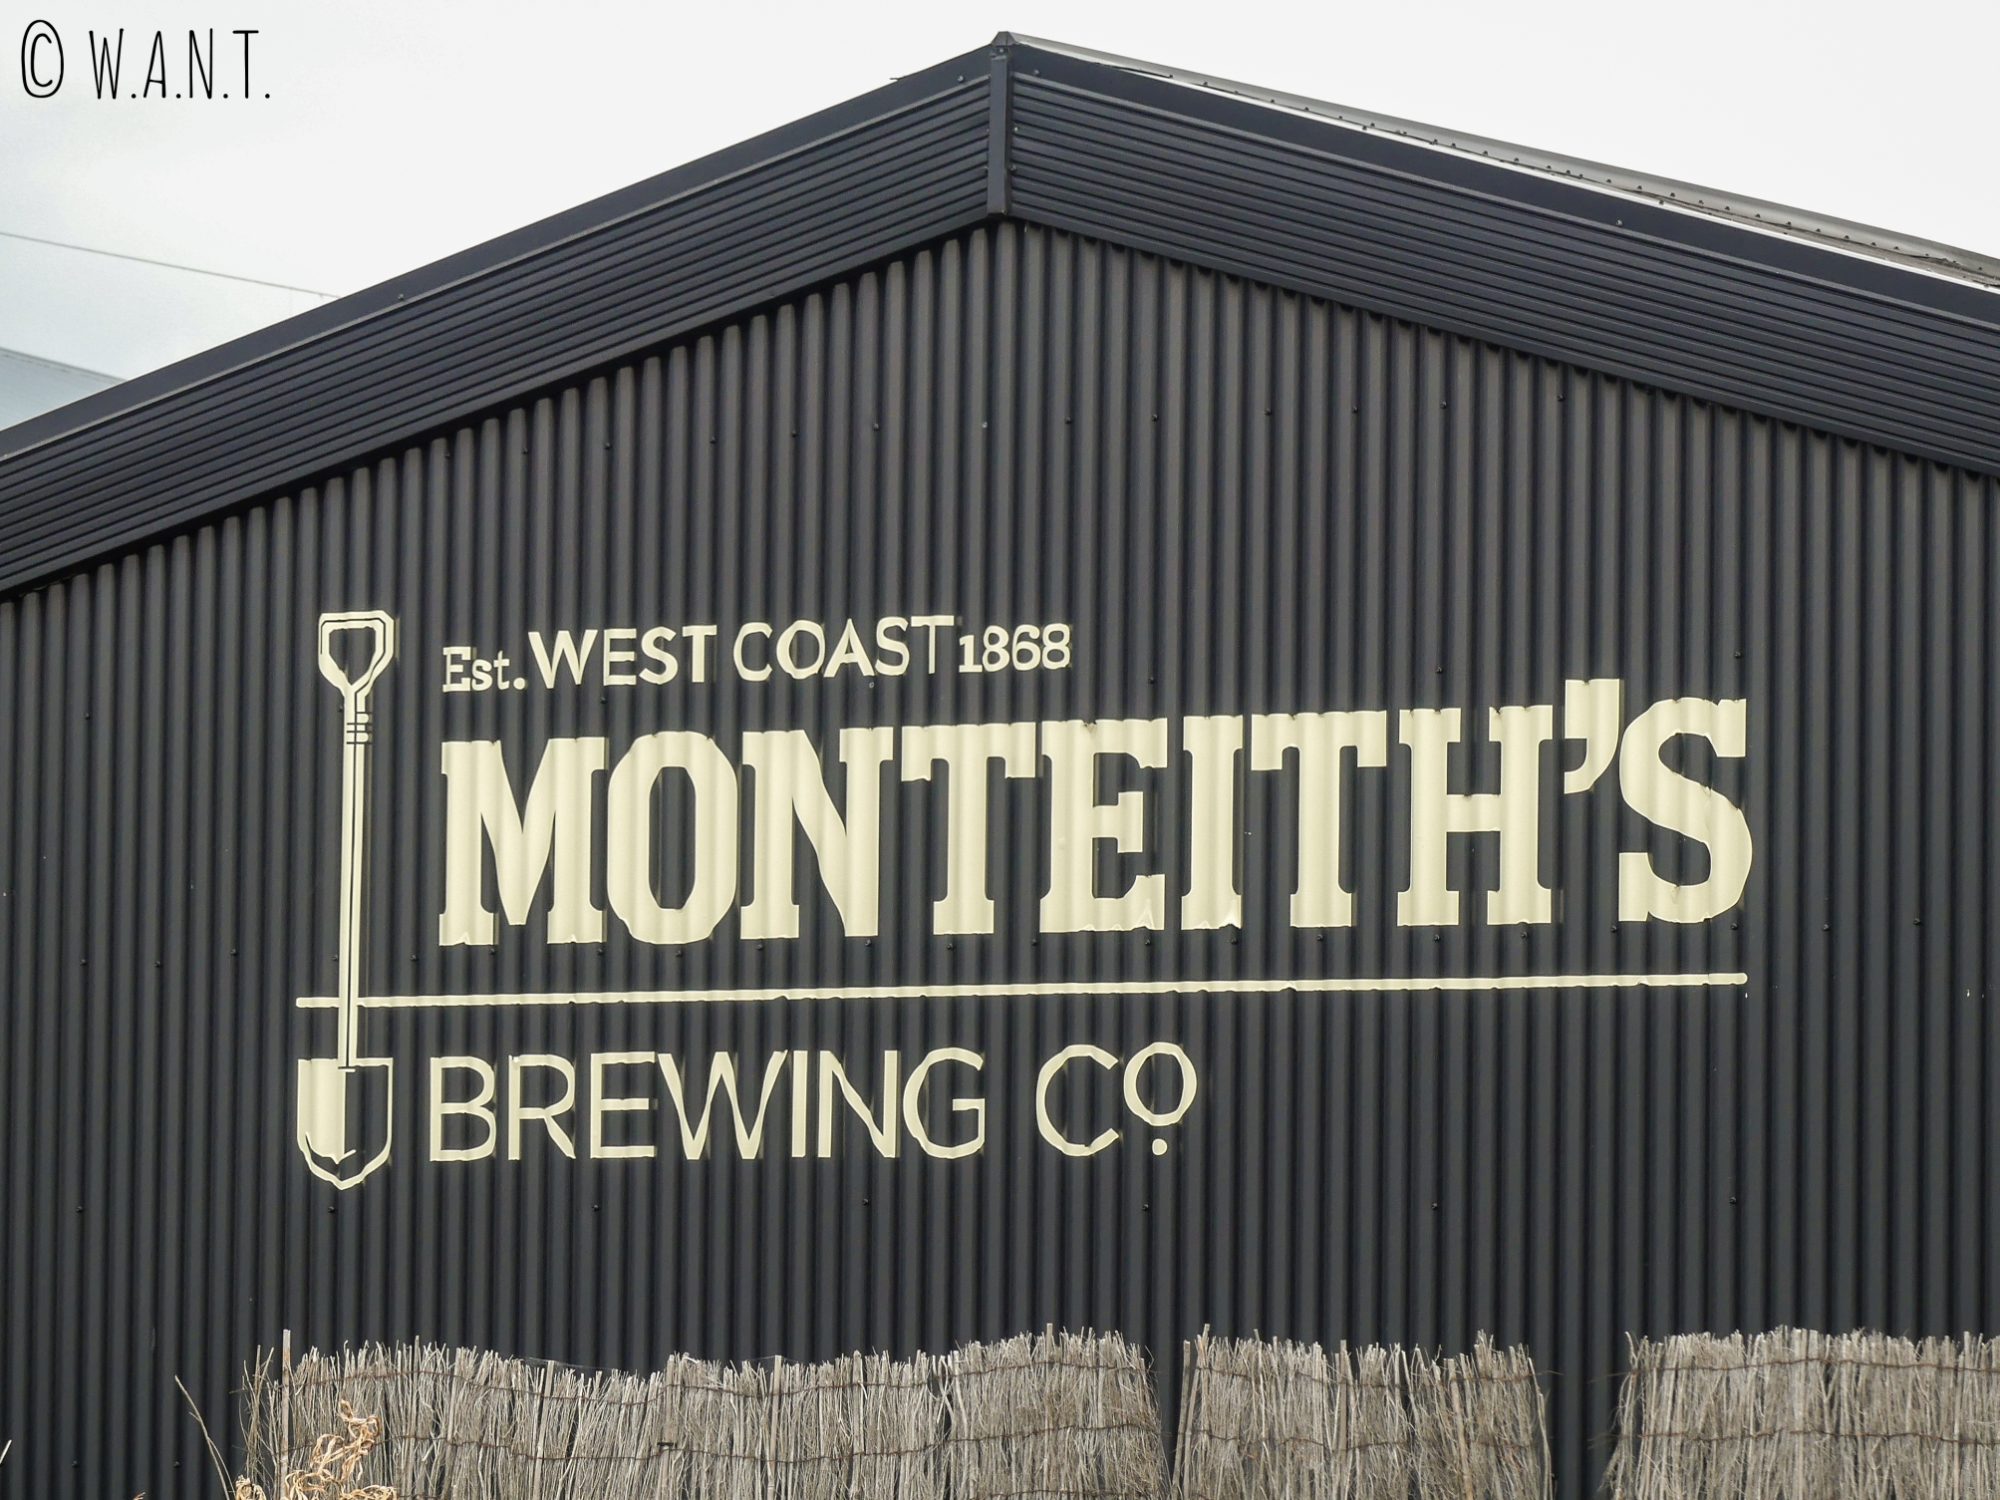 La bière Monteith's est une bière néo-zélandaise